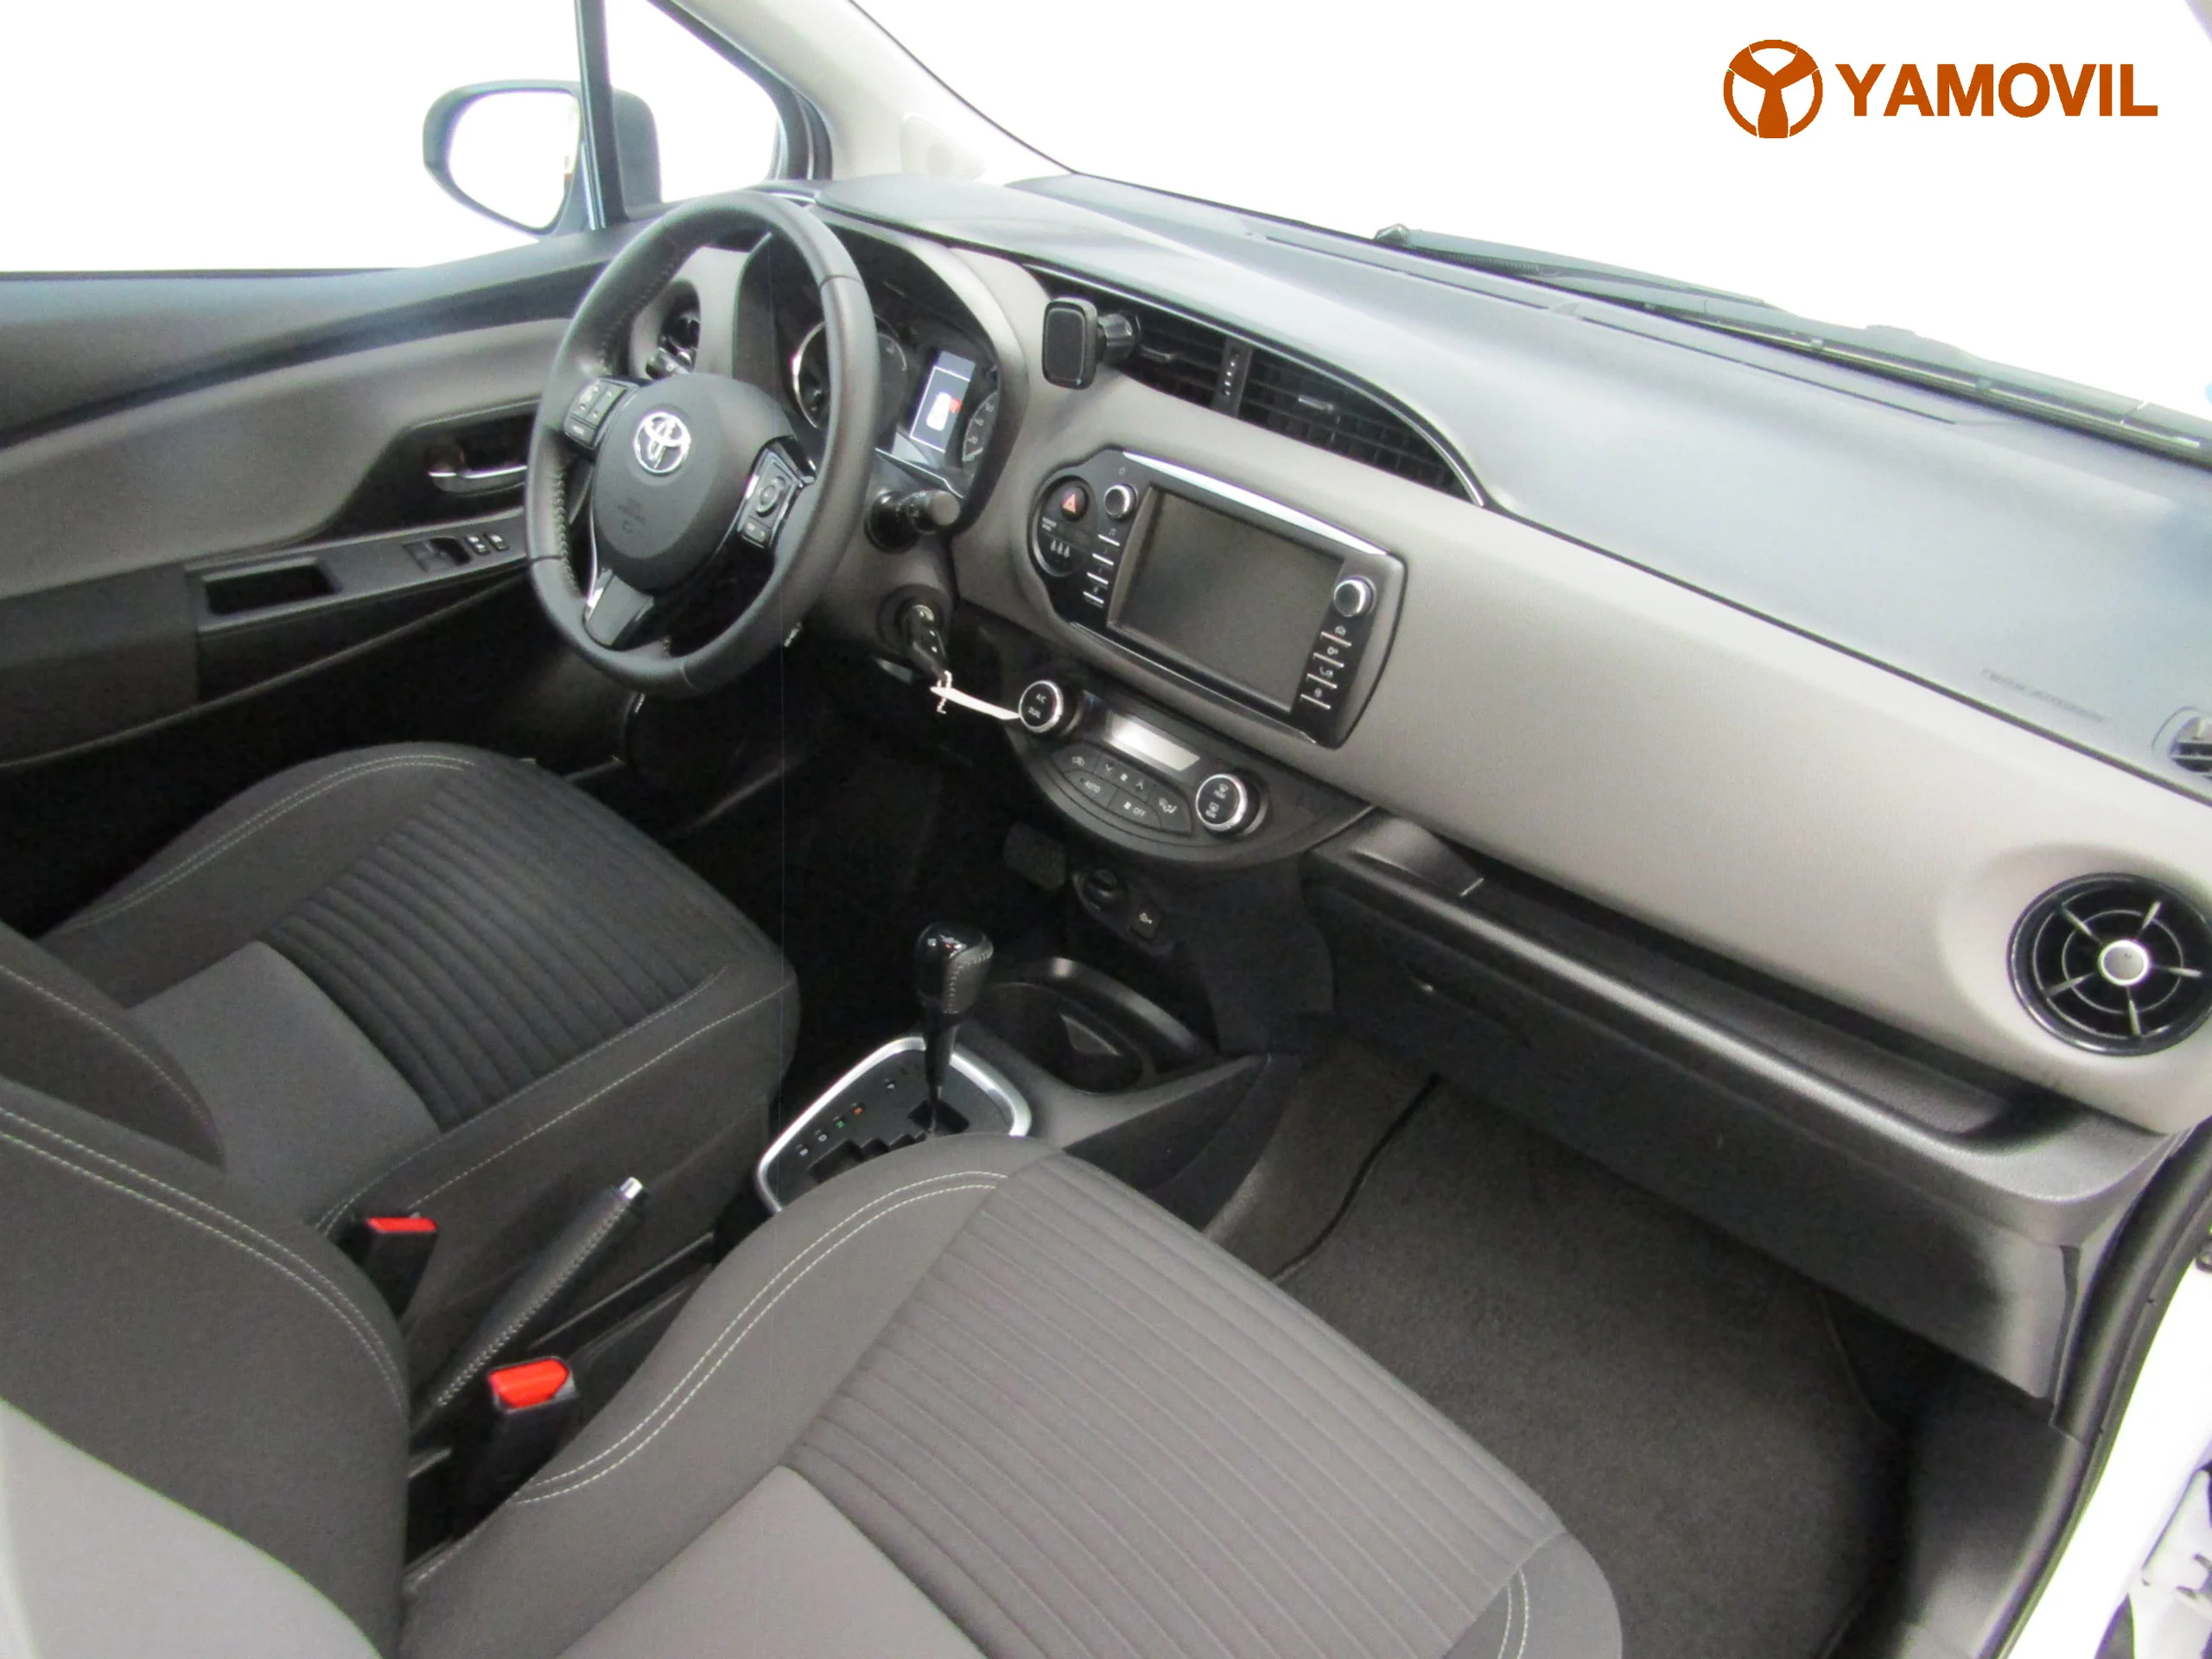 Toyota Yaris 100H AUT (e-CVT) ACTIVE - Foto 14